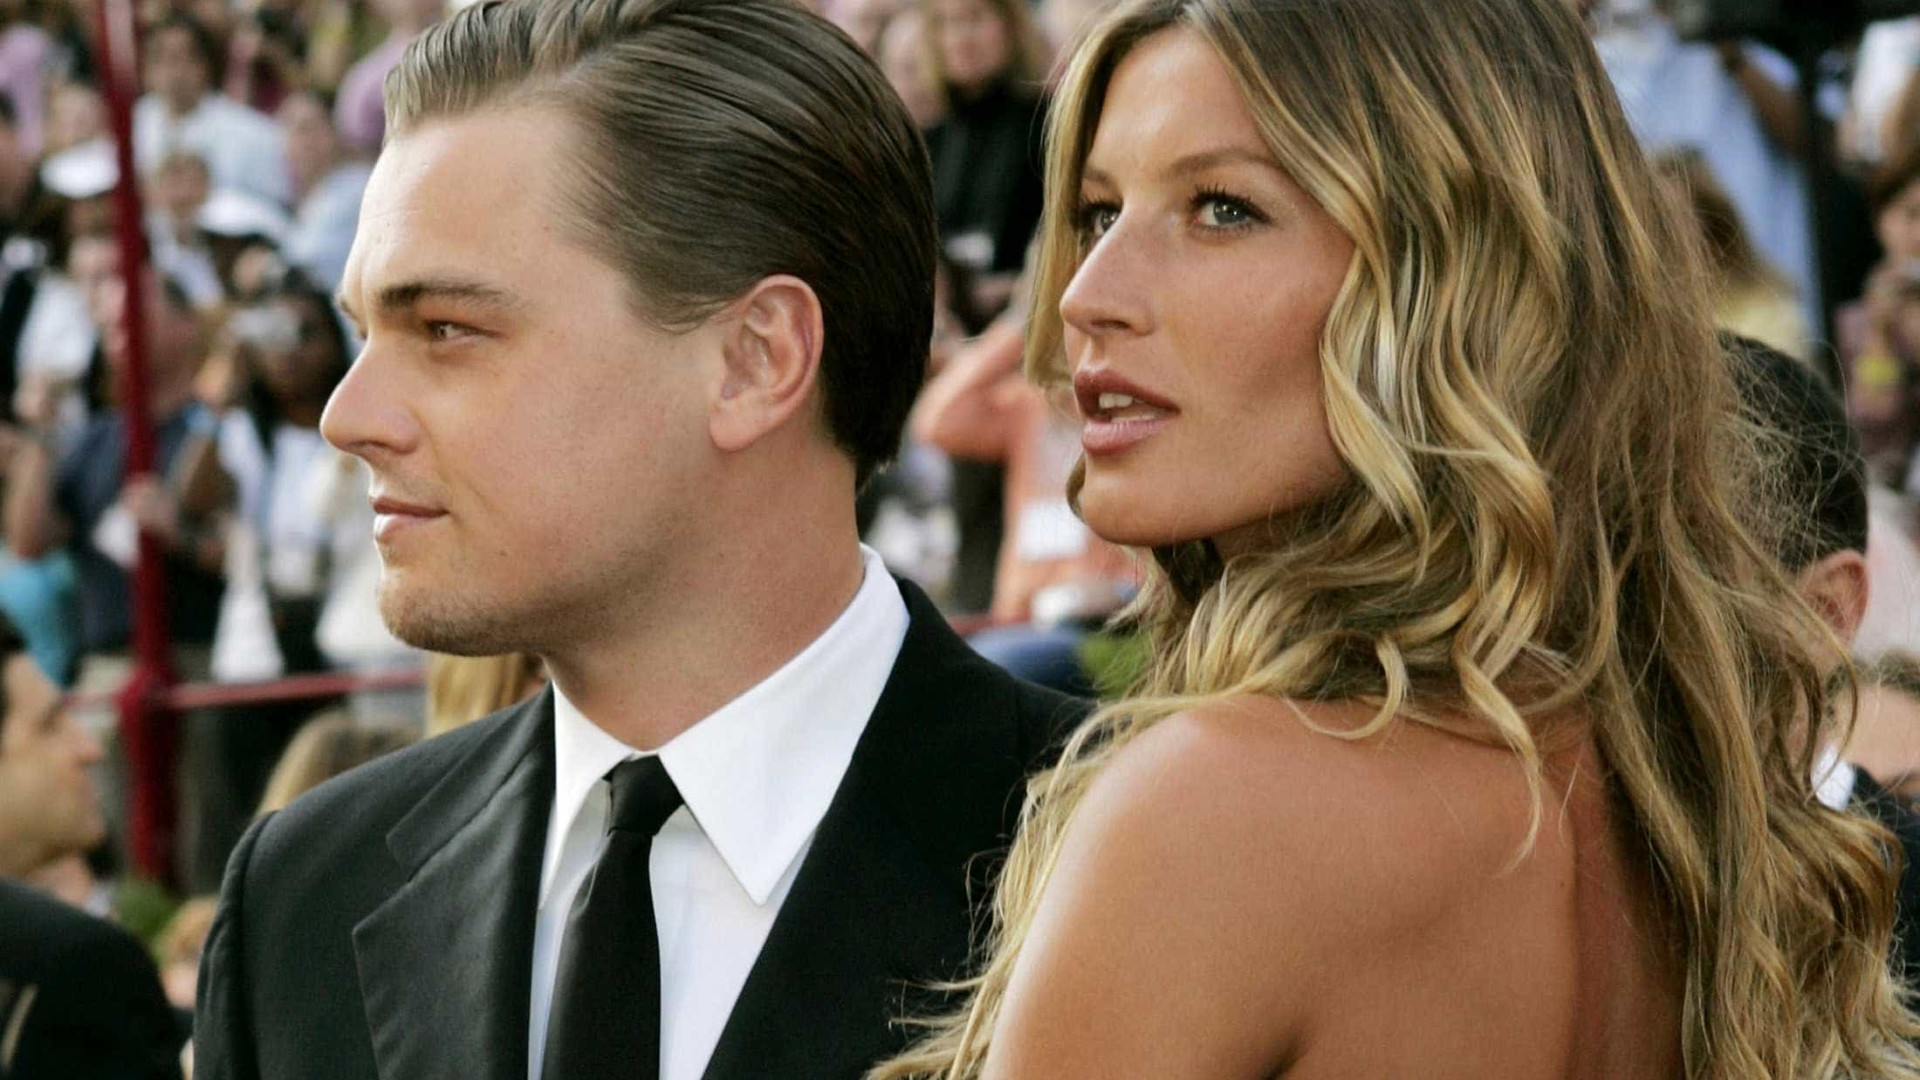 Leonardo DiCaprio só teve namoradas de até 25 anos, diz levantamento